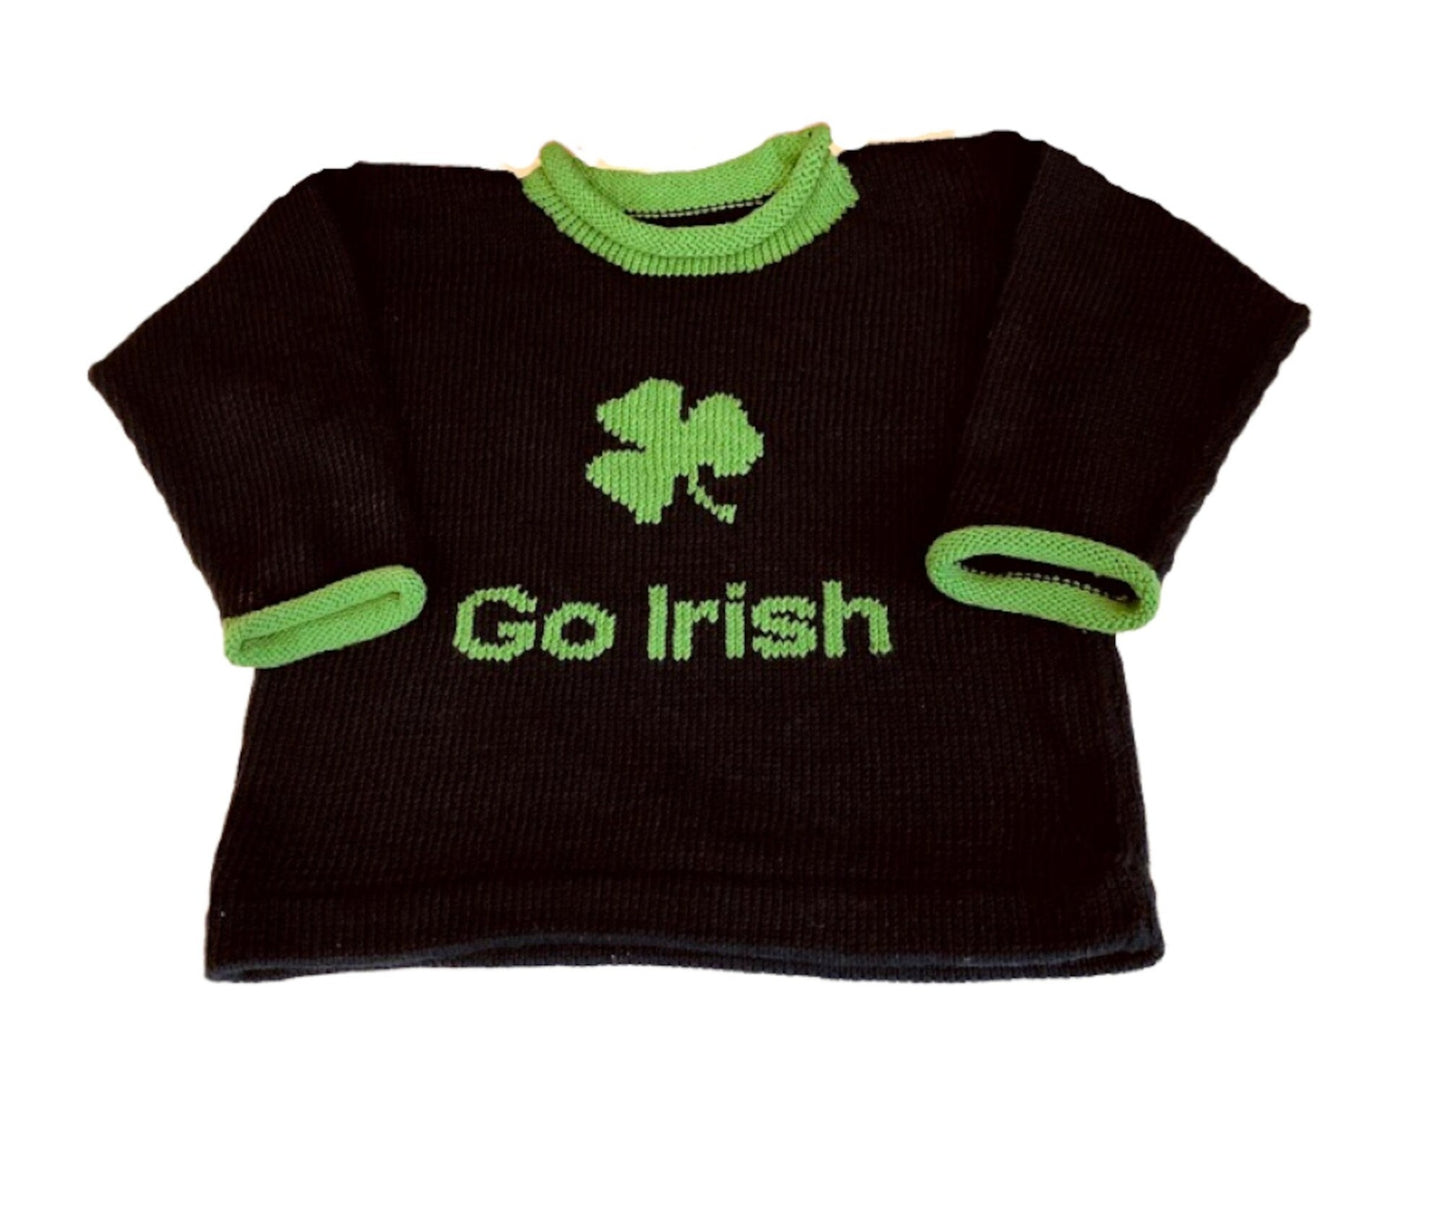 go irish sweater with shamrock